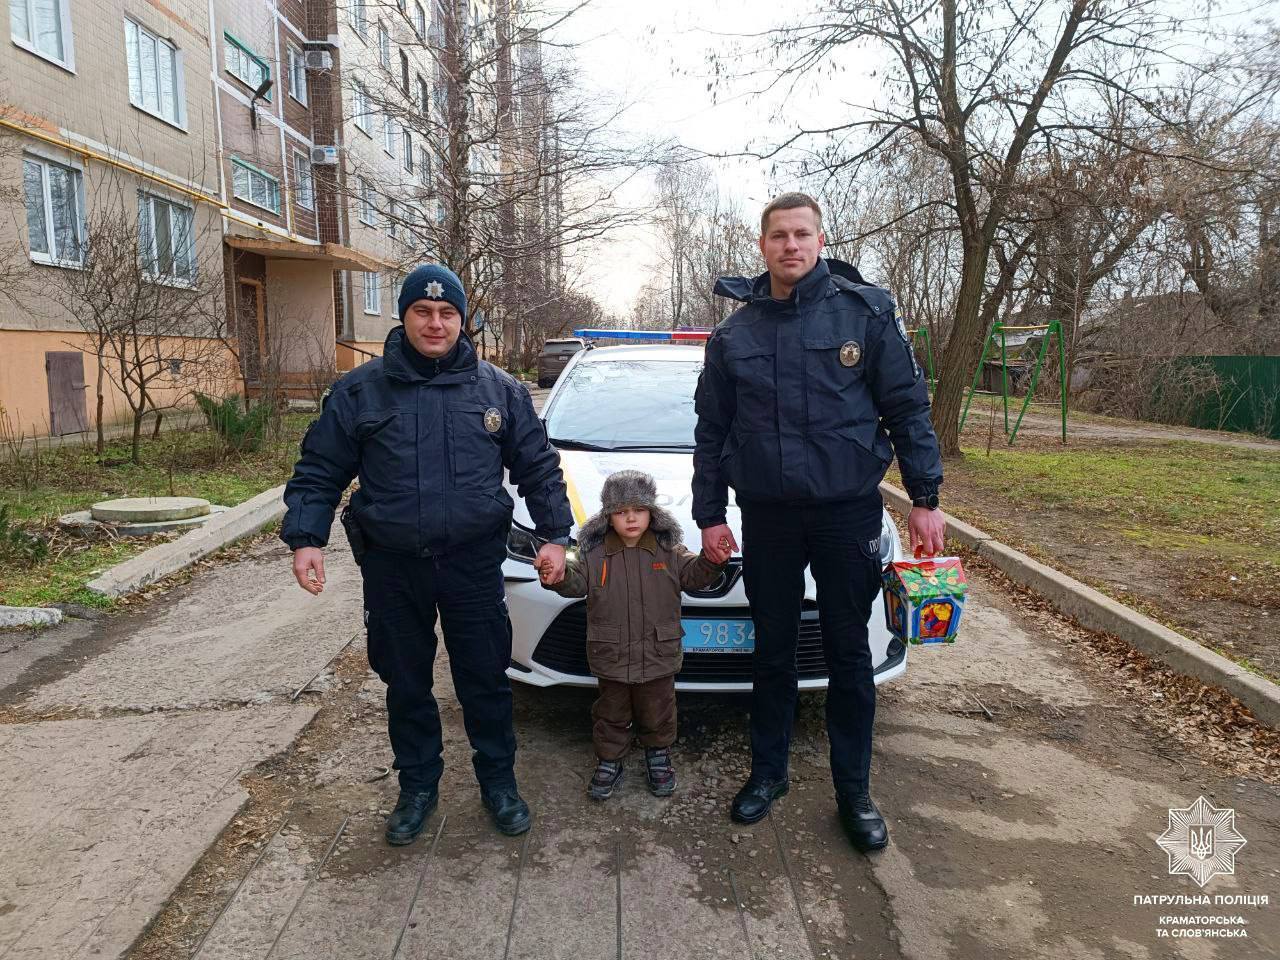 Патрульные преподнесли сюрприз мальчику из Славянска, снимок которого облетел сеть: его папа защищает Украину. Фото